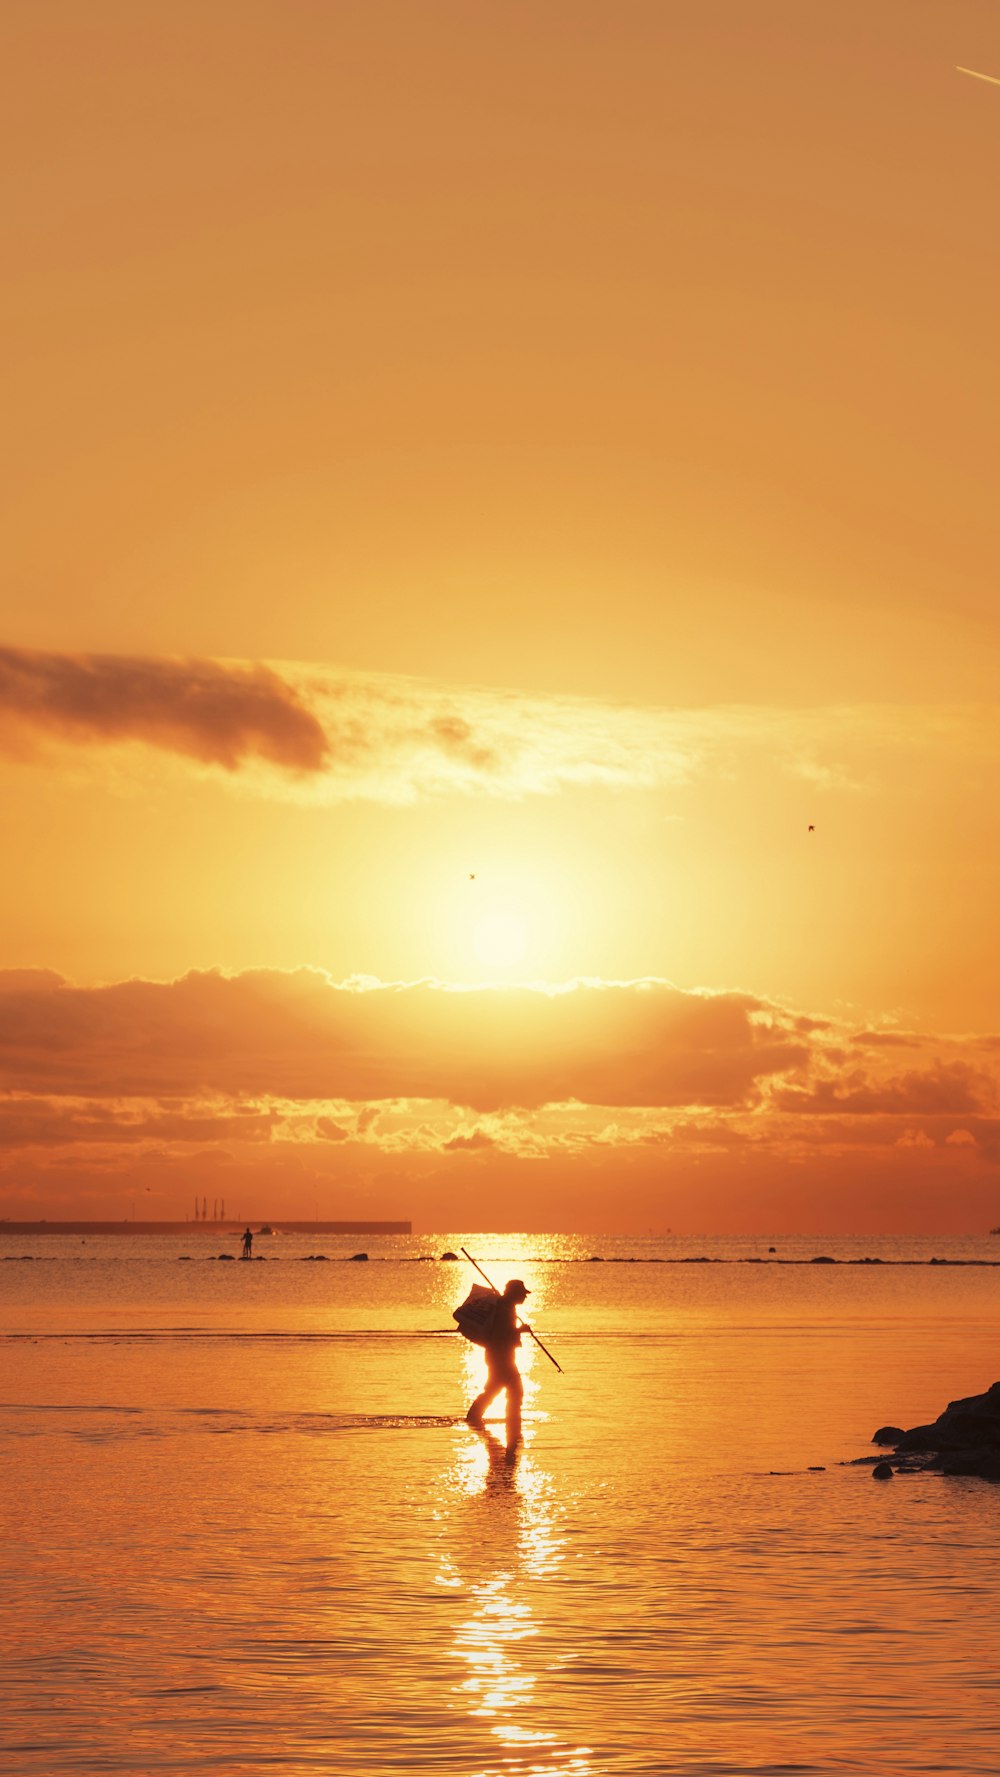 une personne sur une planche de surf dans l’eau au coucher du soleil